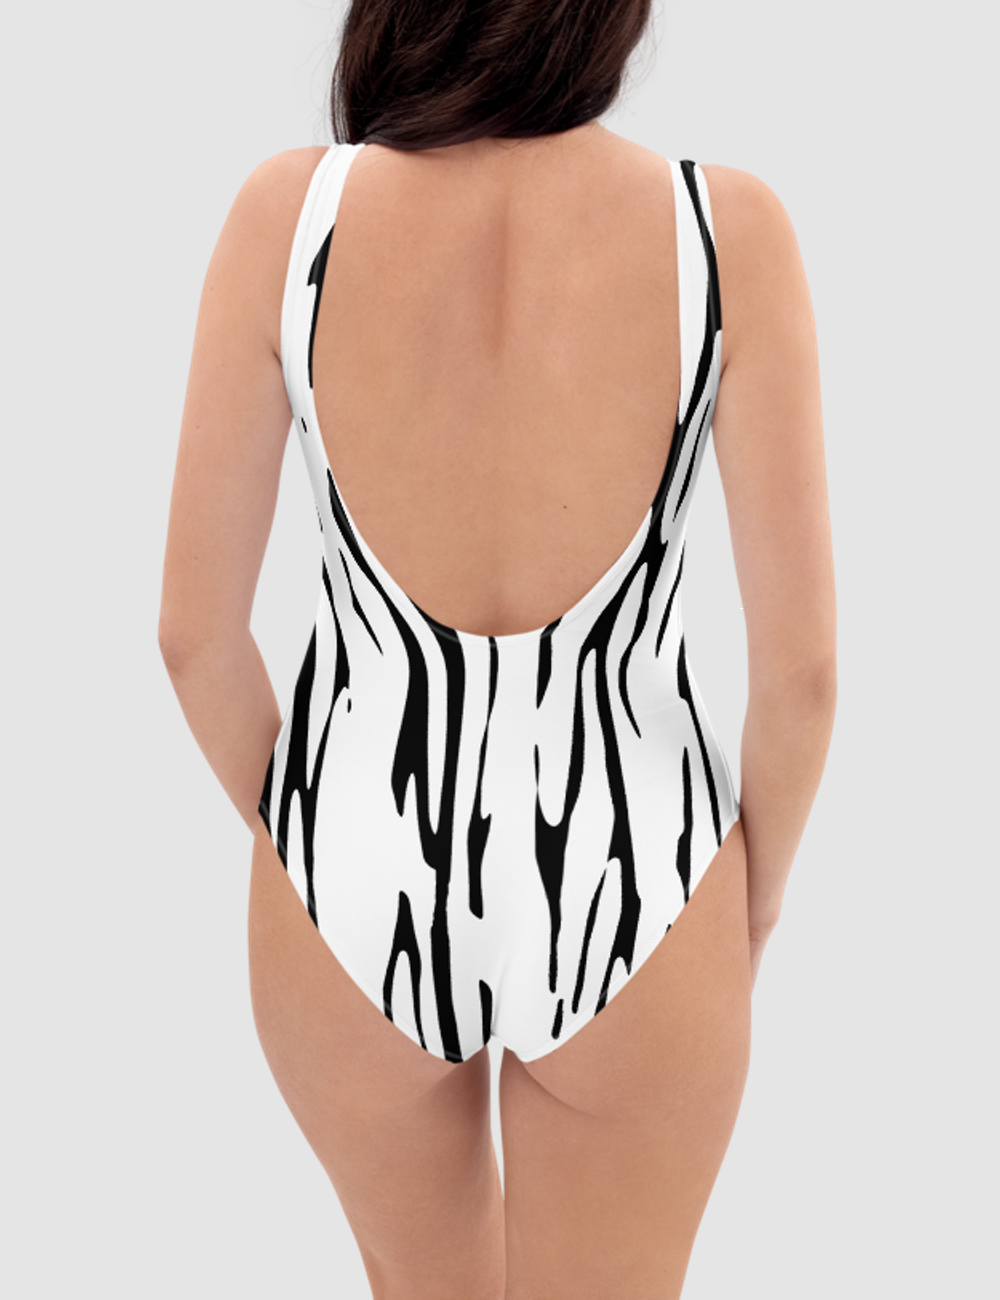 Classic Striped Zebra | Women's One-Piece Swimsuit OniTakai